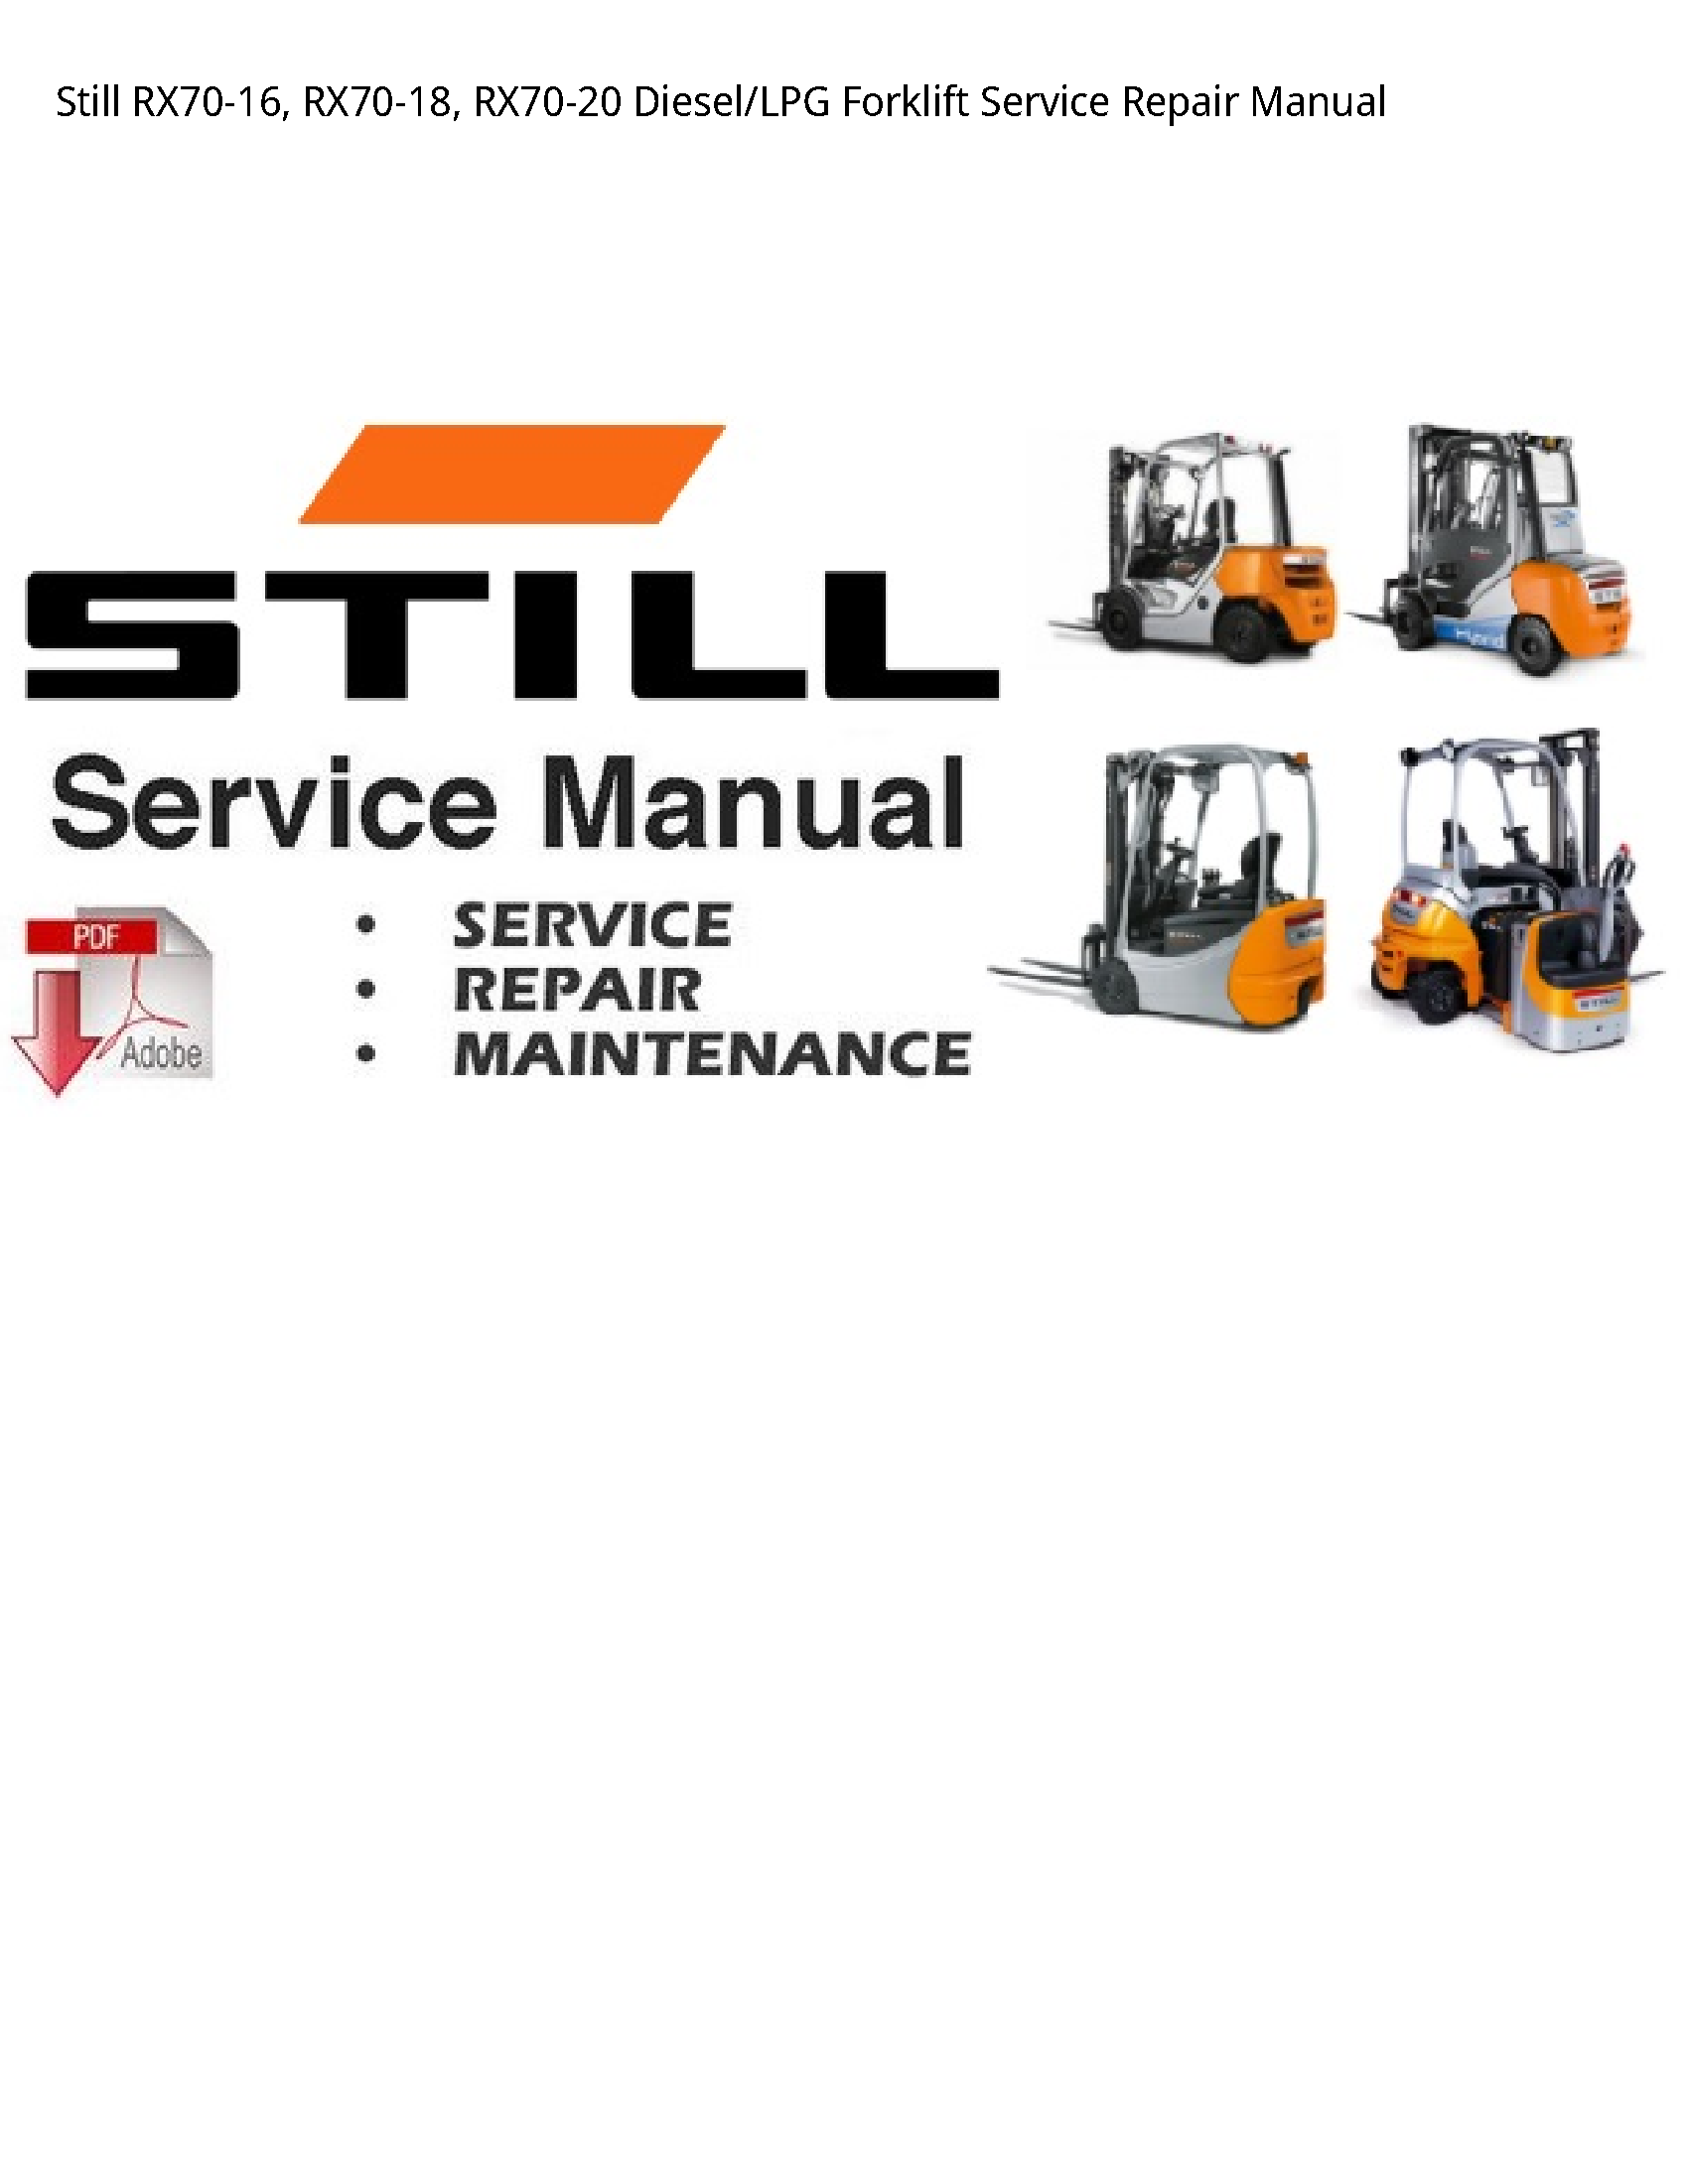 Still RX70-16 Diesel/LPG Forklift manual